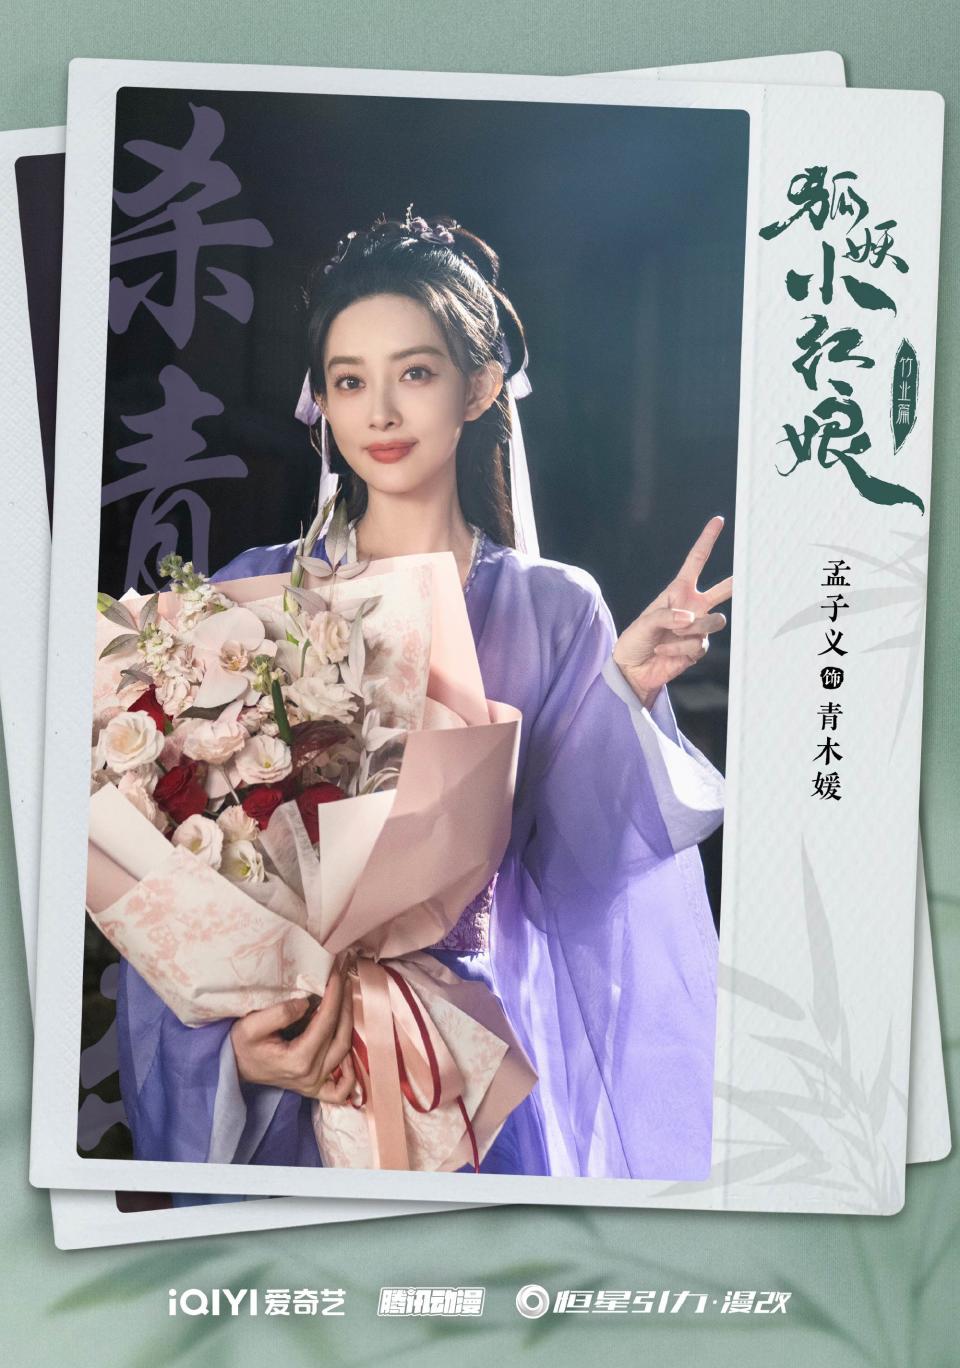 孟子義在劇中飾演「青木媛」。圖片來源：电视剧狐妖小红娘竹业篇